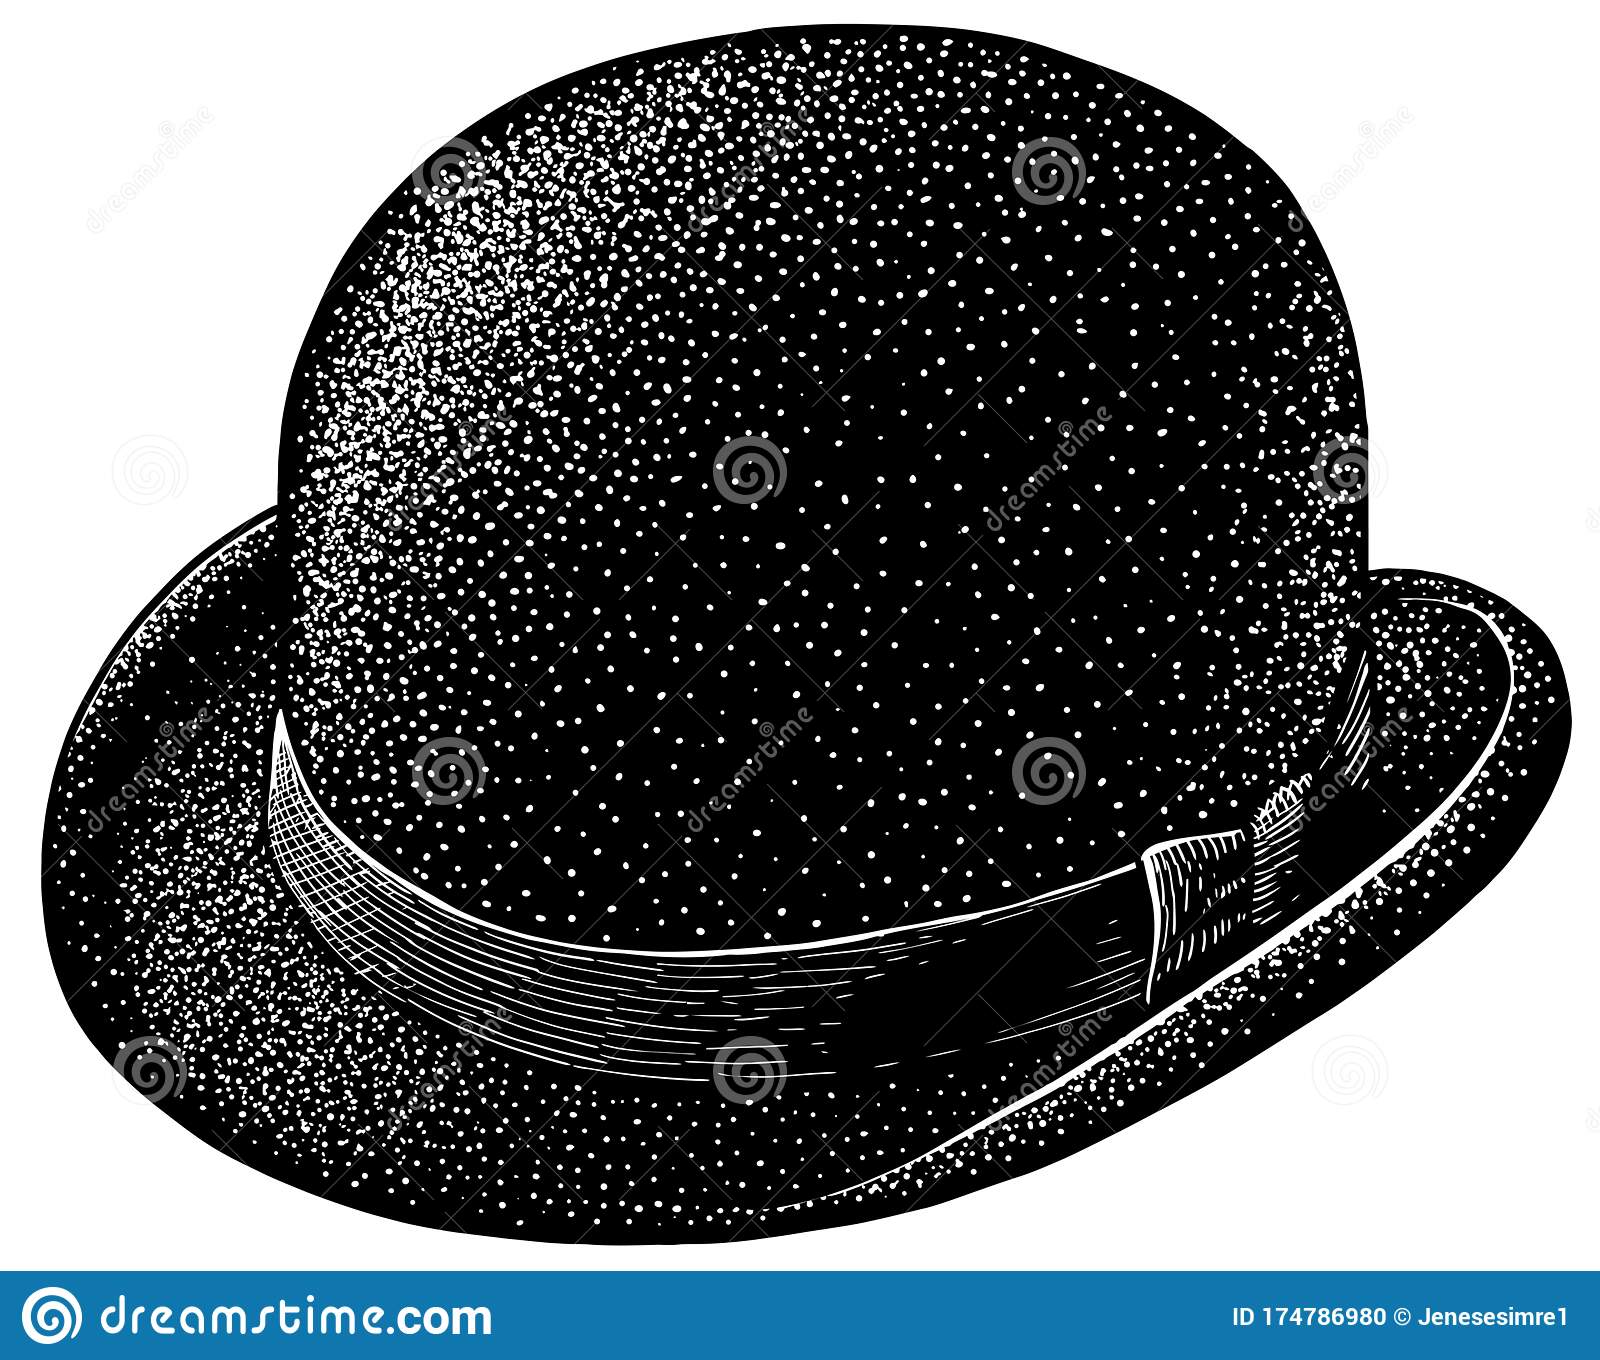 Bowler Hat Illustration